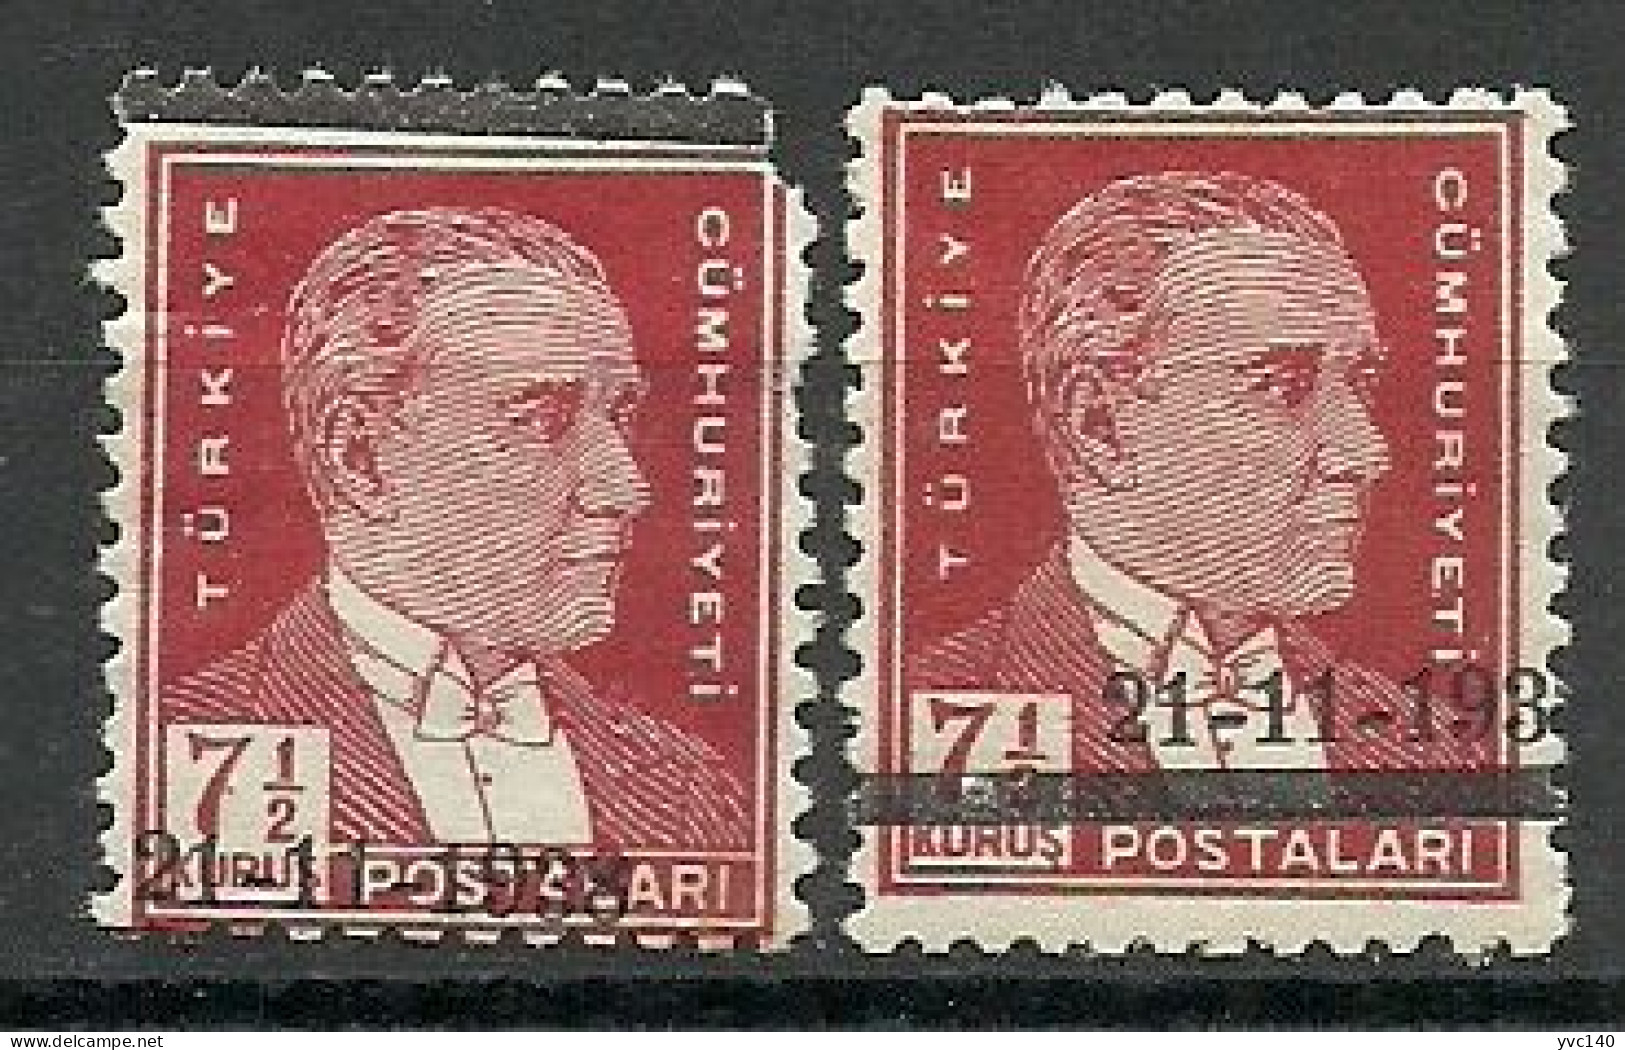 Turkey; 1938 Ataturk Mourning 7 1/2 K. "Misplaced Overprint" ERRORS - Unused Stamps